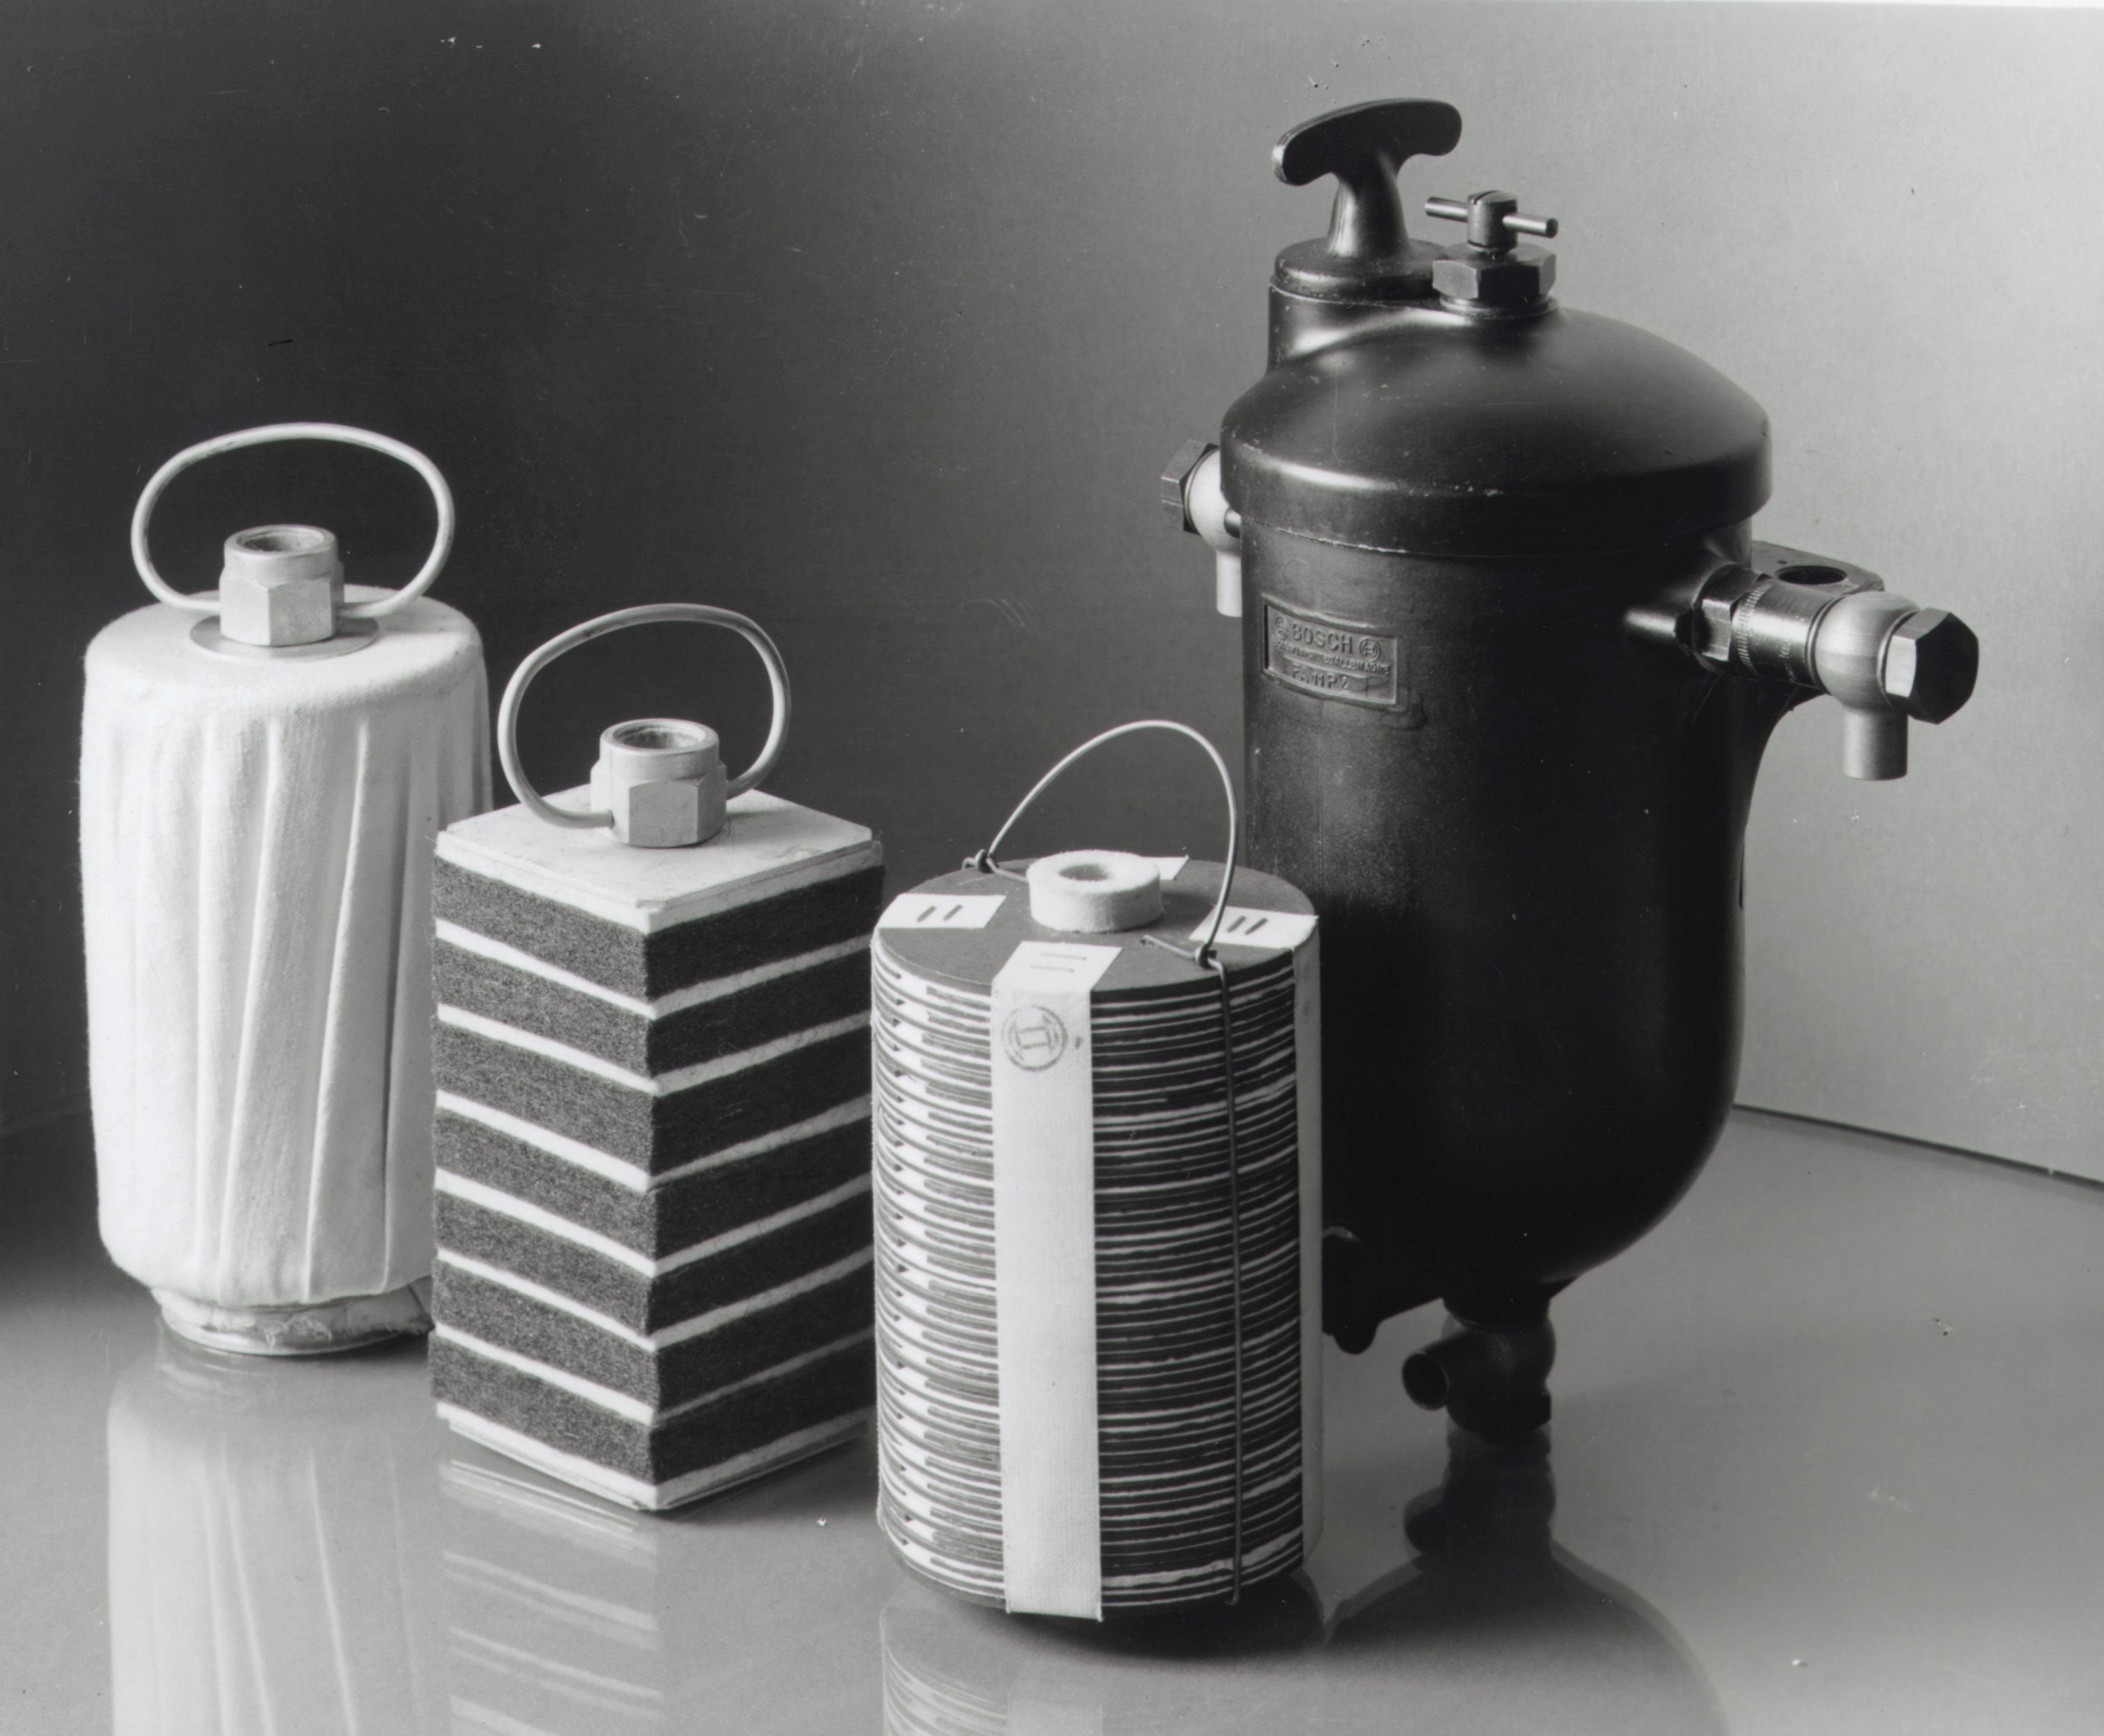 Historische productfoto uit 1939